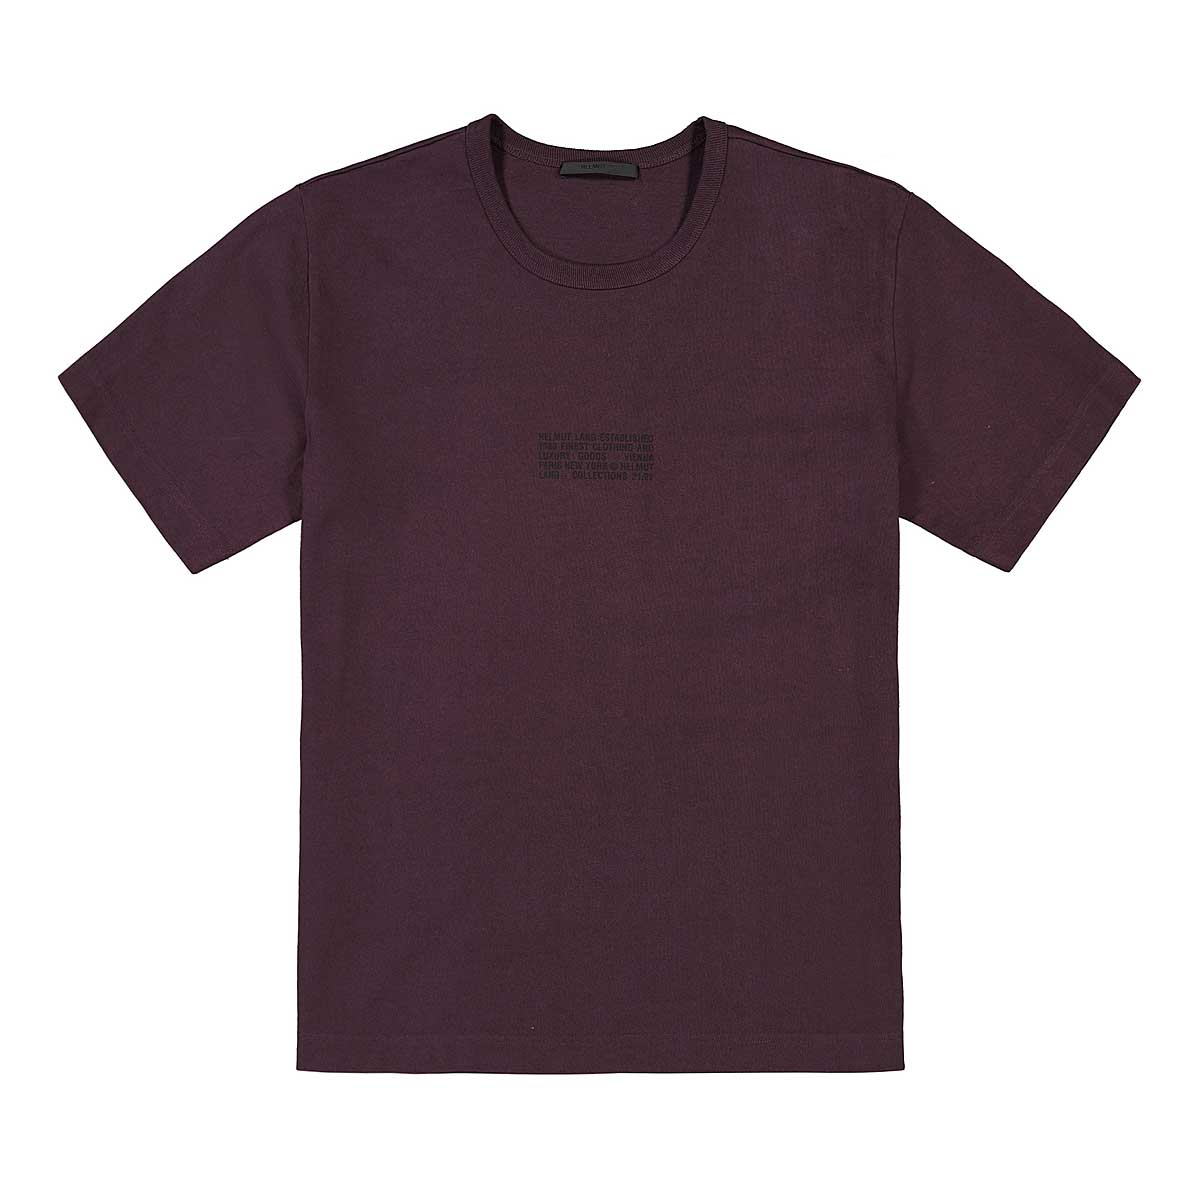 Helmut Lang Distort T-Shirt, Mulberry